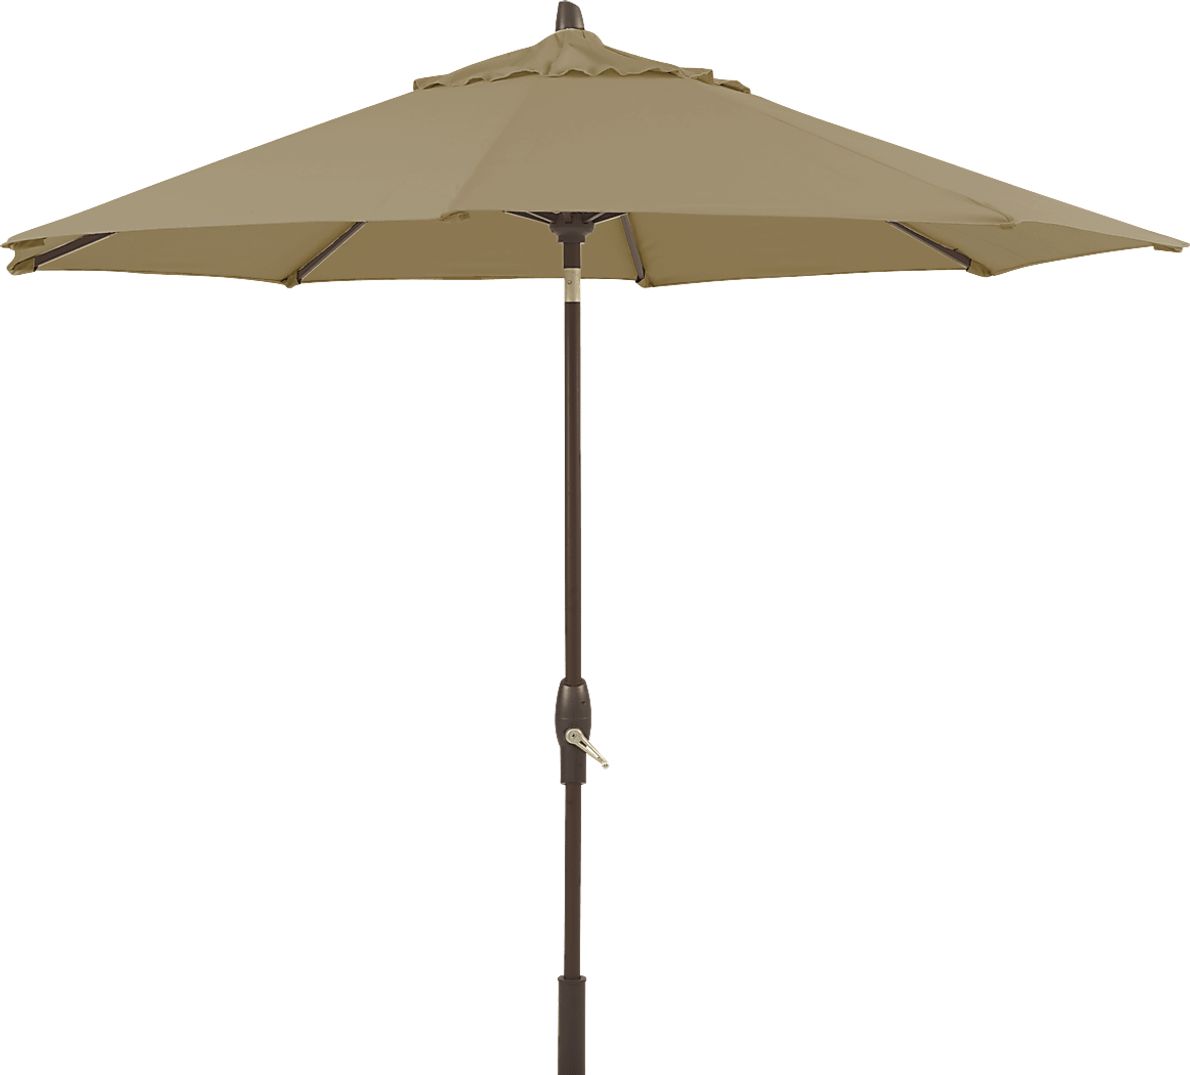 Seaport 9' Octagon Heather Beige Outdoor Umbrella